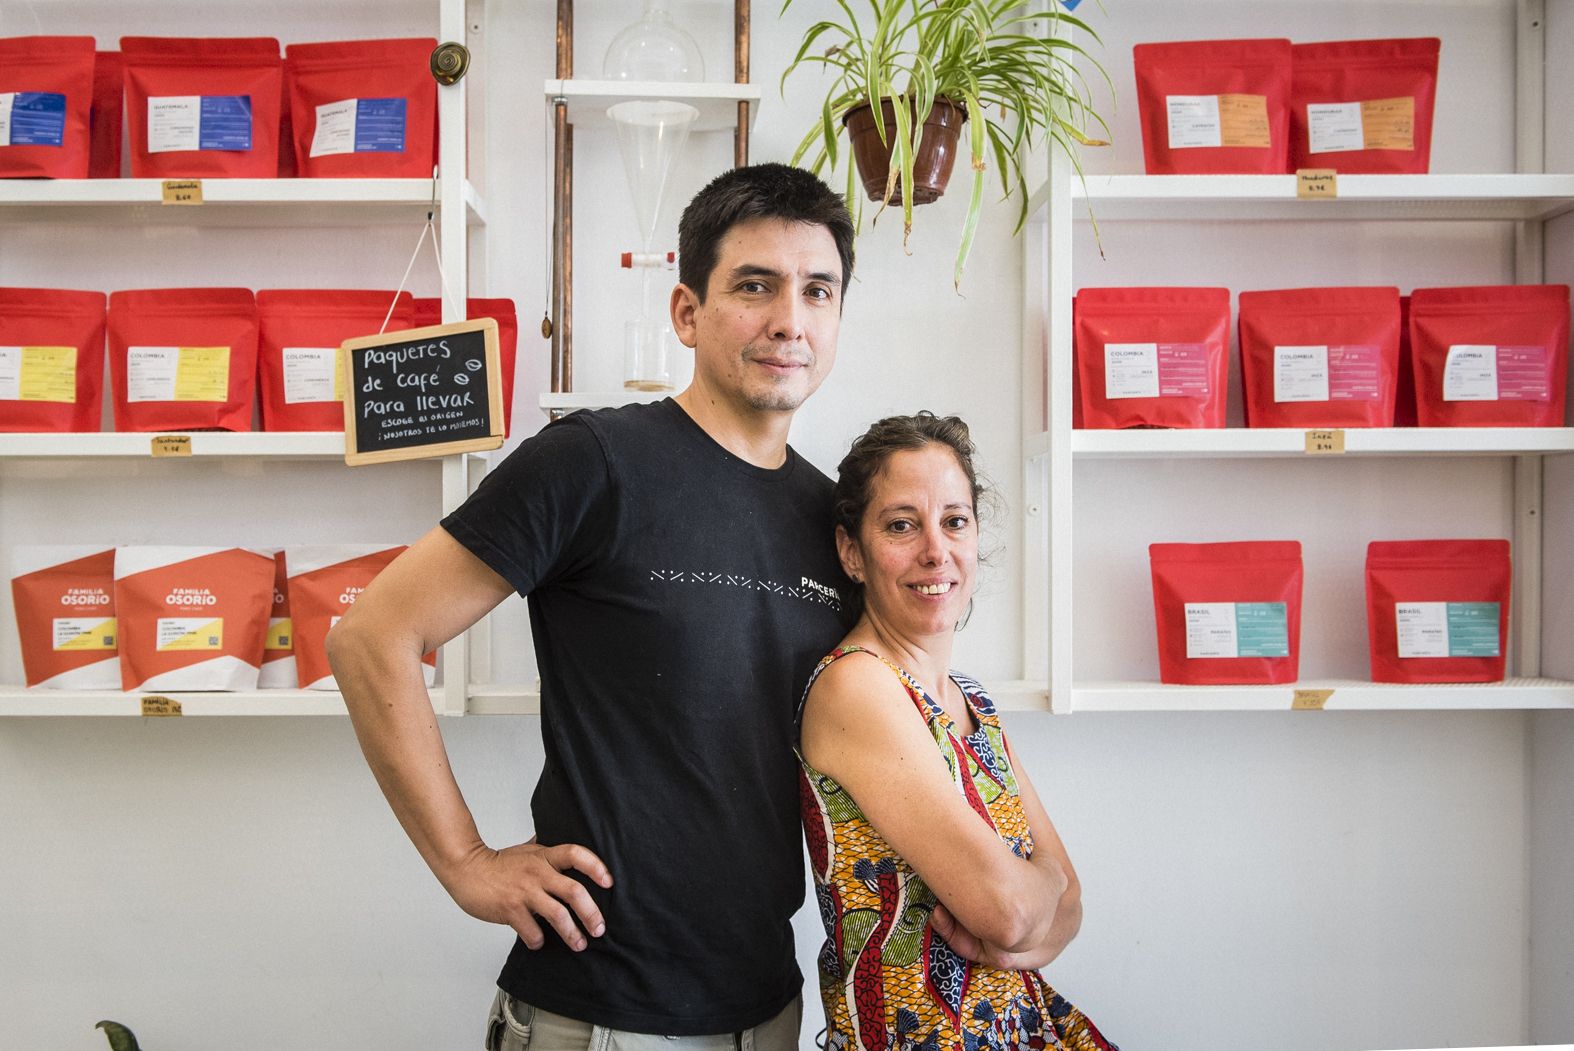 Catalina Álvarez y Andrés Cifuentes, la pareja colombiana afincada en Sevilla creadores de La Parcería.